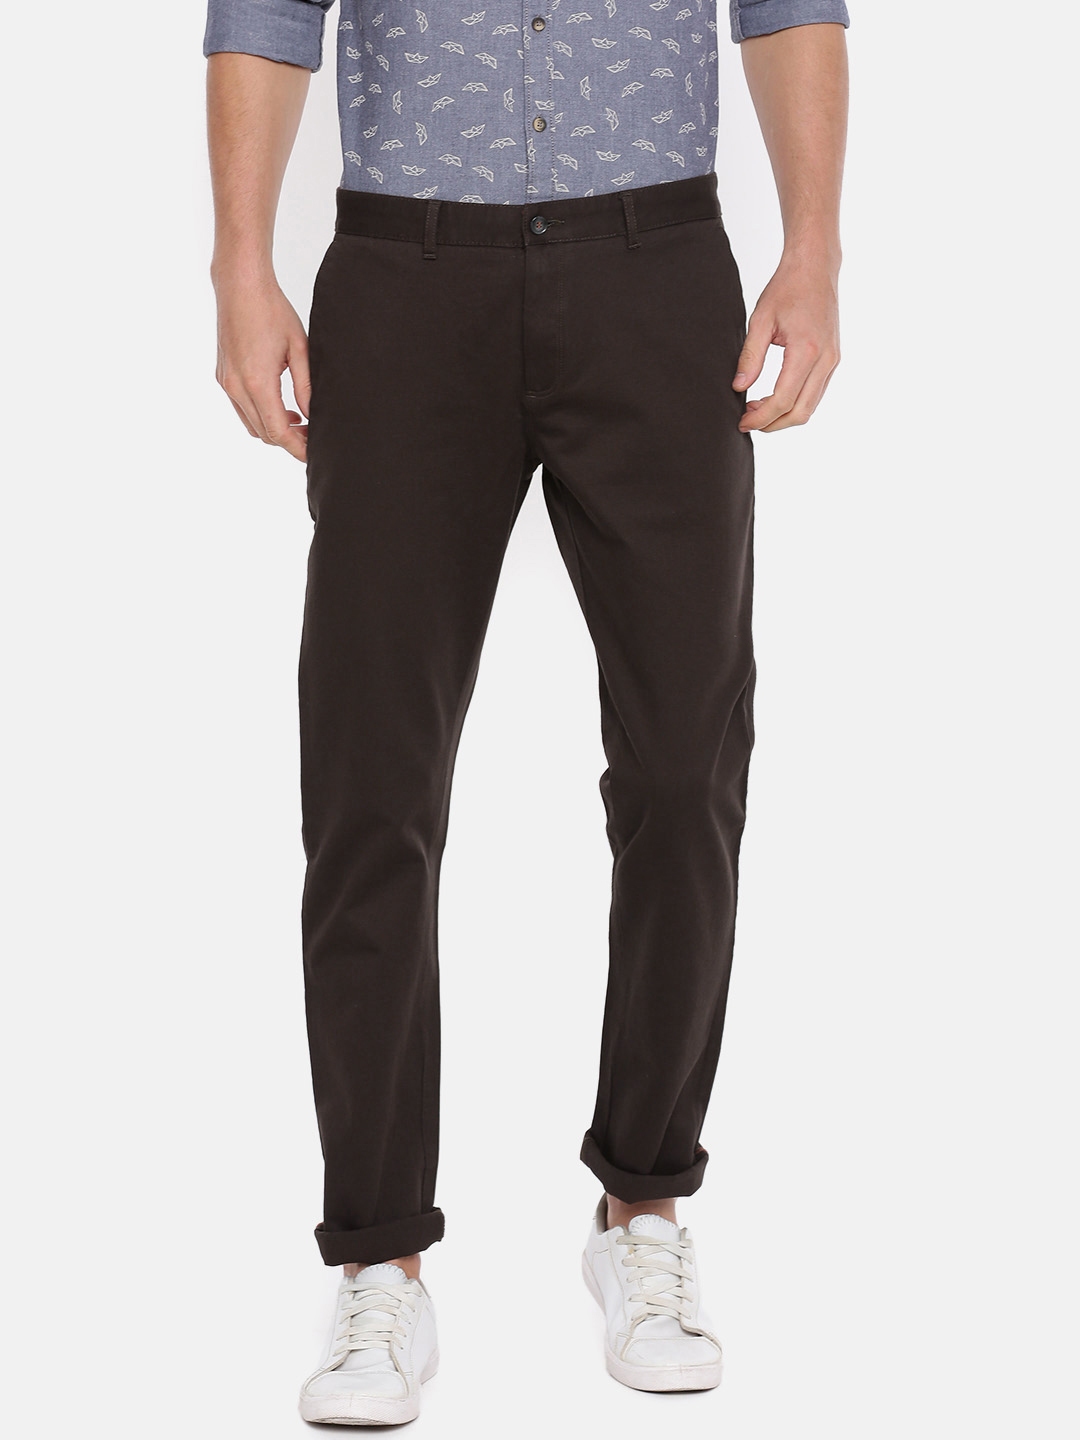 Buy Blackberrys Men Coffee Brown Regular Fit Solid Chinos - Trousers ...